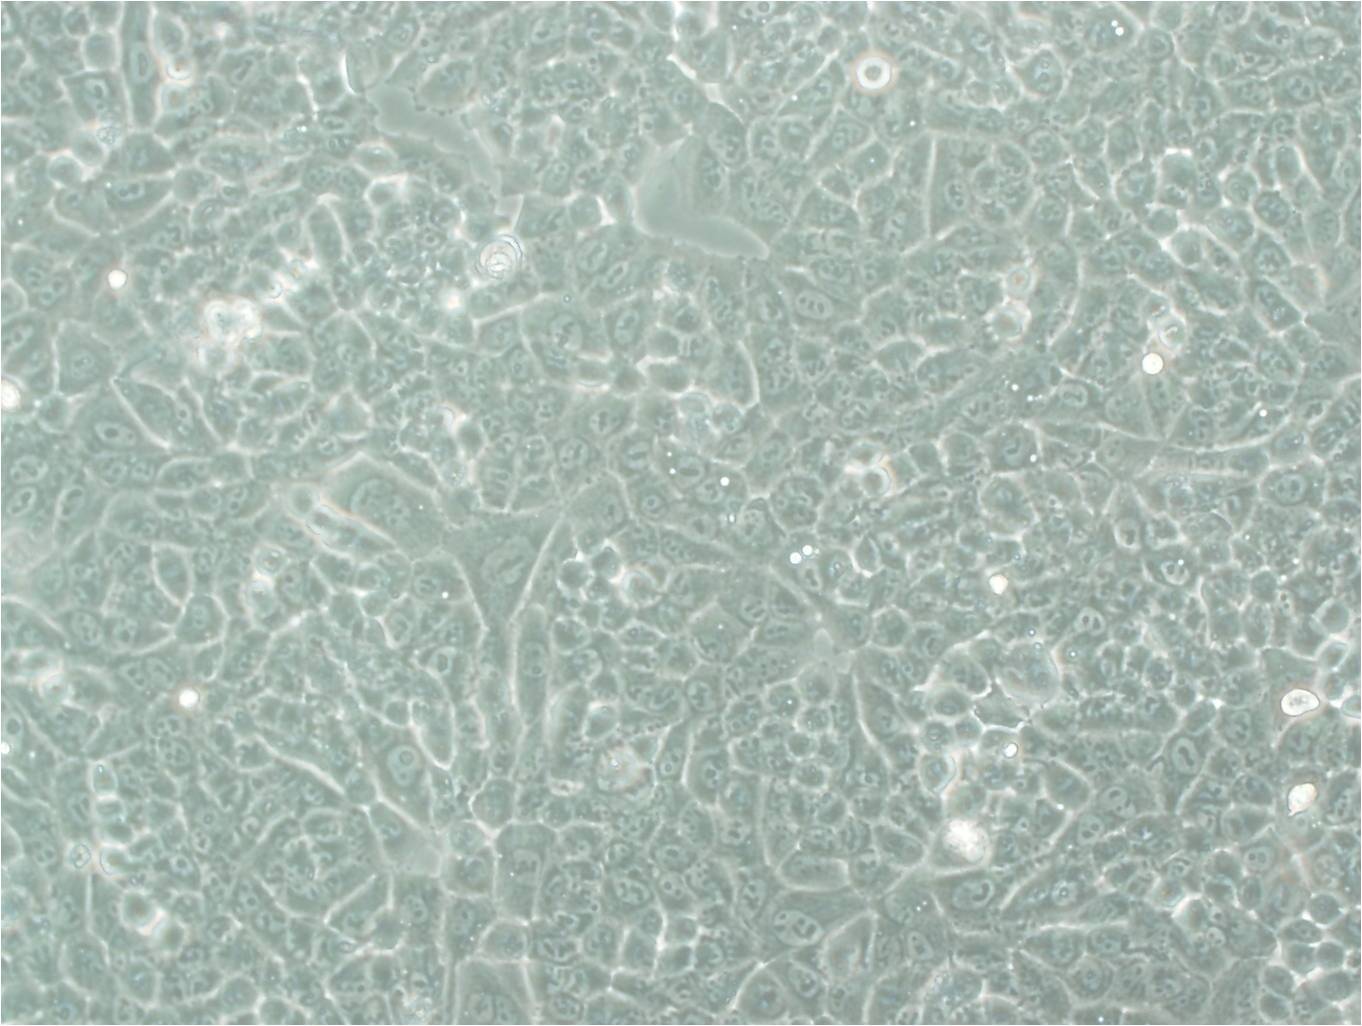 GP2d Fresh Cells|人结肠癌细胞(送STR基因图谱),GP2d Fresh Cells